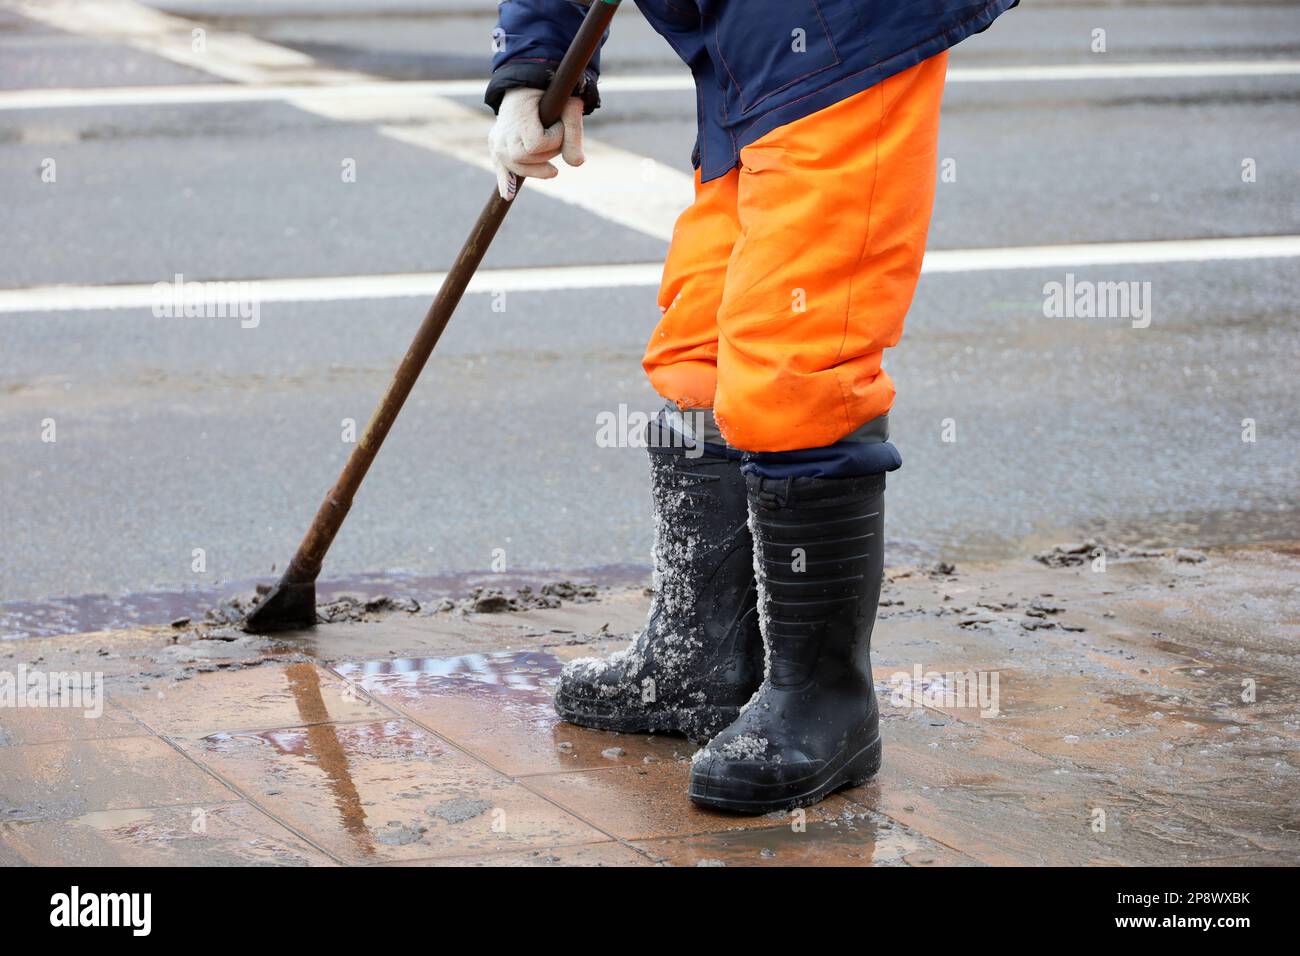 L'employé brise la glace et fait fondre la neige sur la route avec un pied de biche. Déneigement en ville, nettoyage des rues au début du printemps Banque D'Images